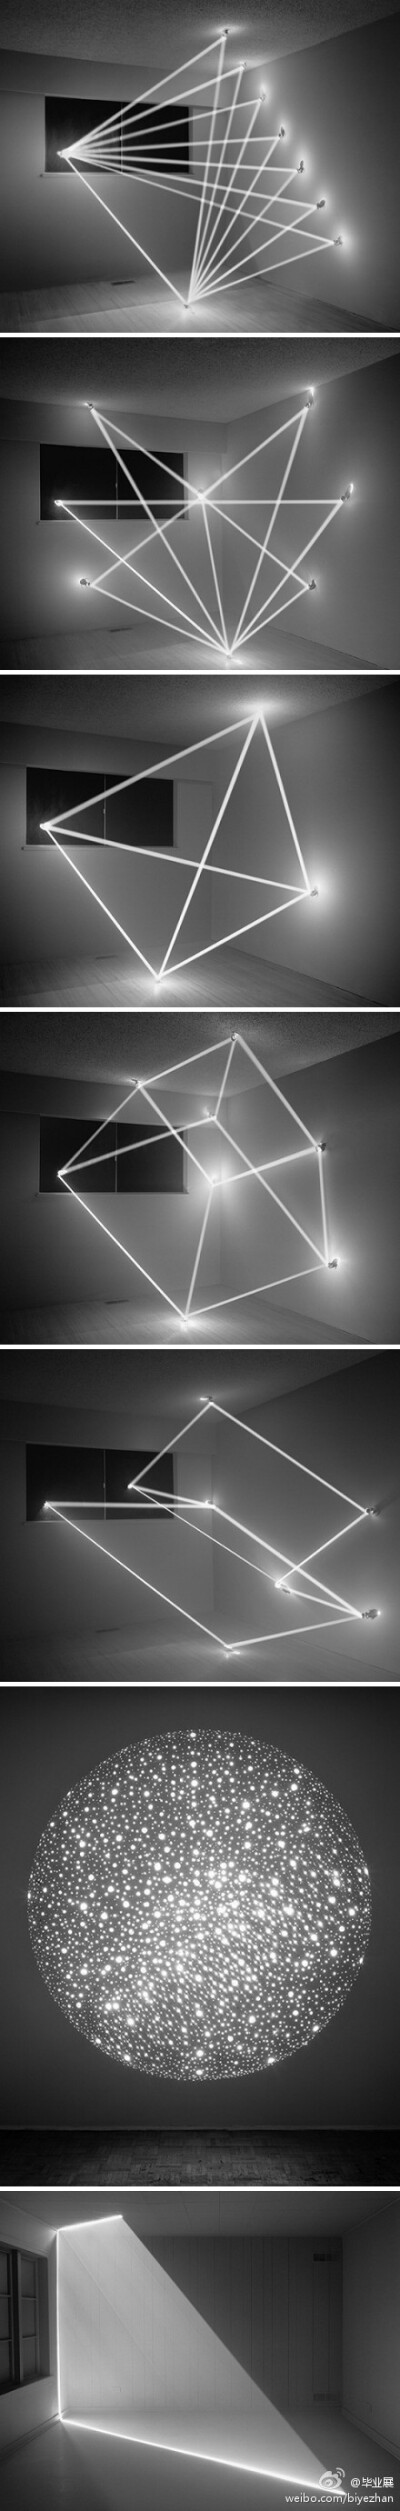 突破了时间与空间的限制，加拿大艺术家James Nizam用美丽的光影给我们带来了非同一般的视觉体验。